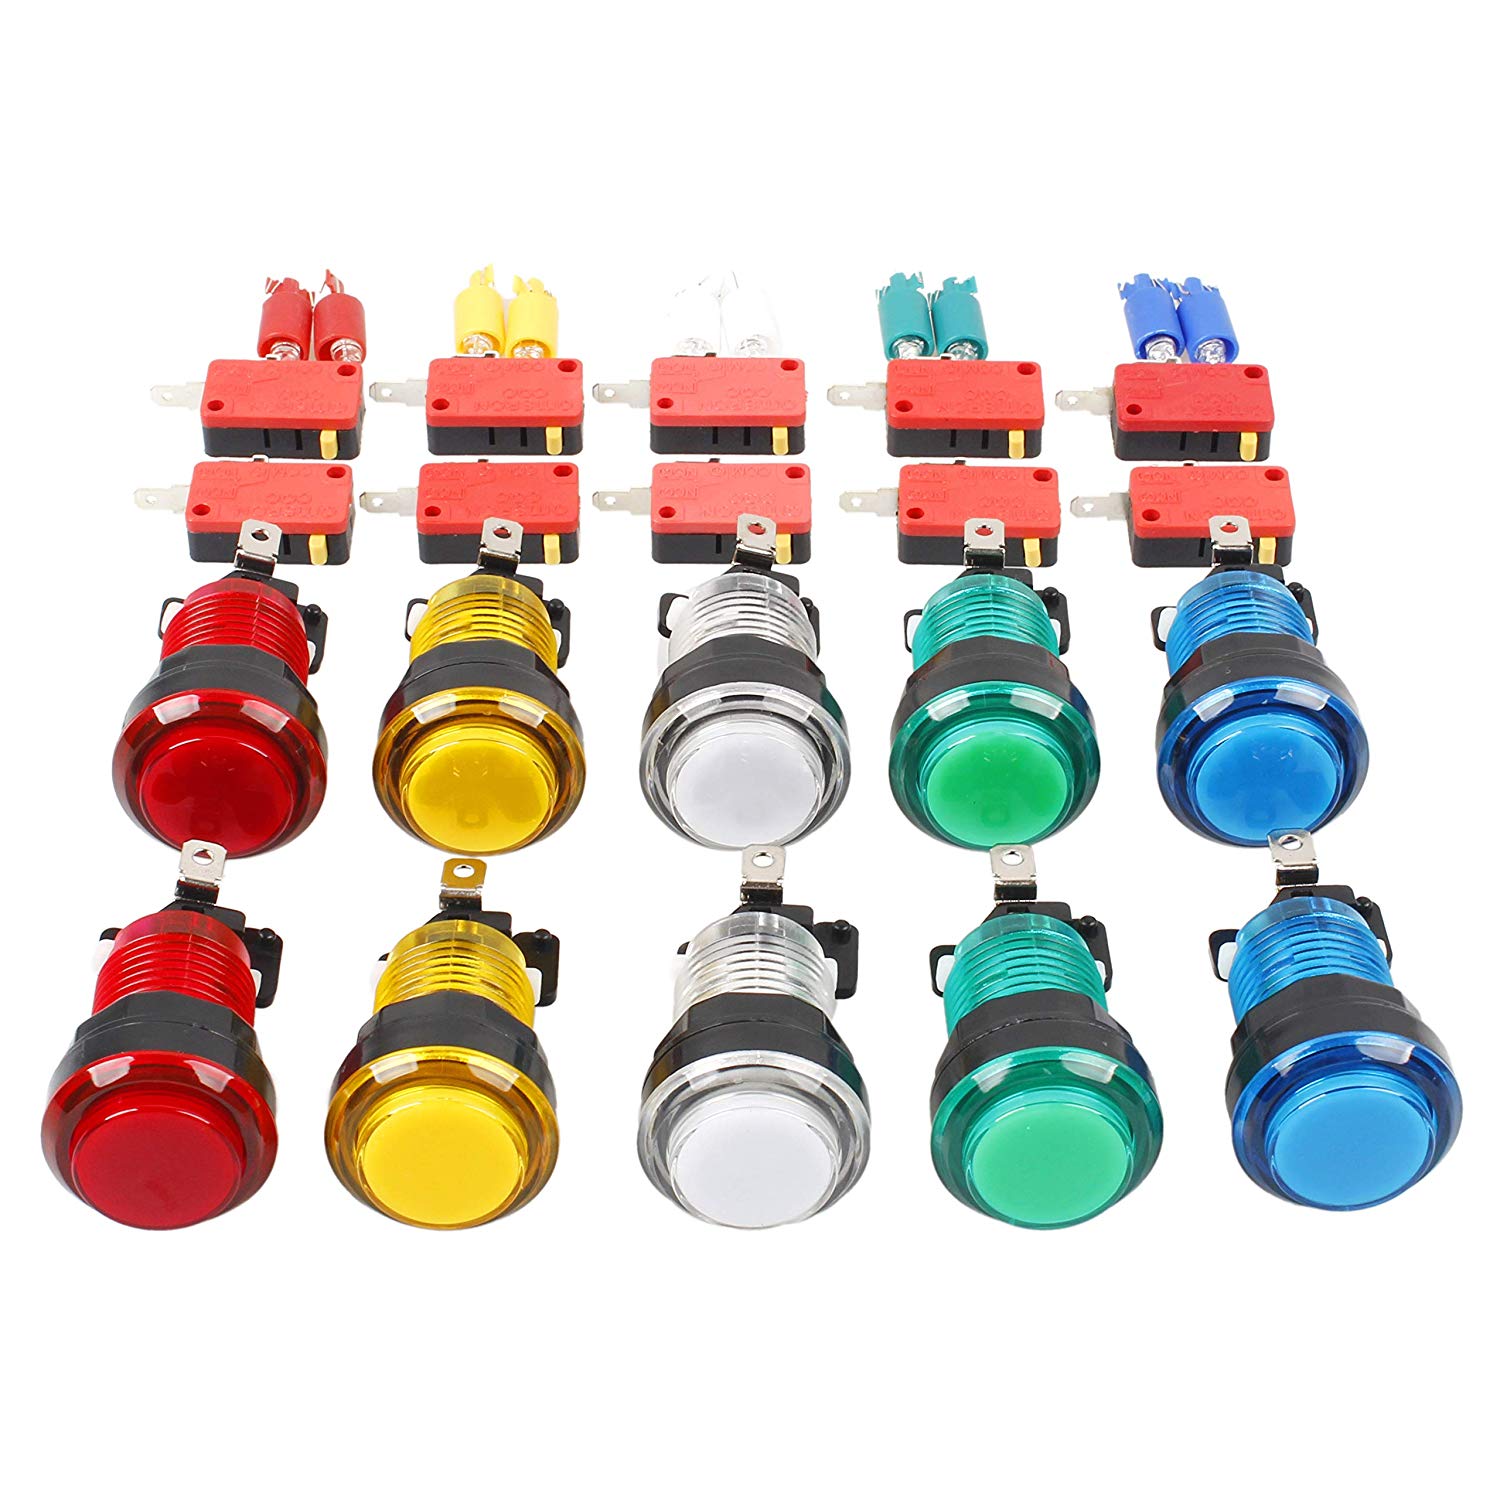 Botón pulsador de juego Arcade de 28mm, 5 colores, piezas de bricolaje,  interruptor de botones iluminados LED para controladores